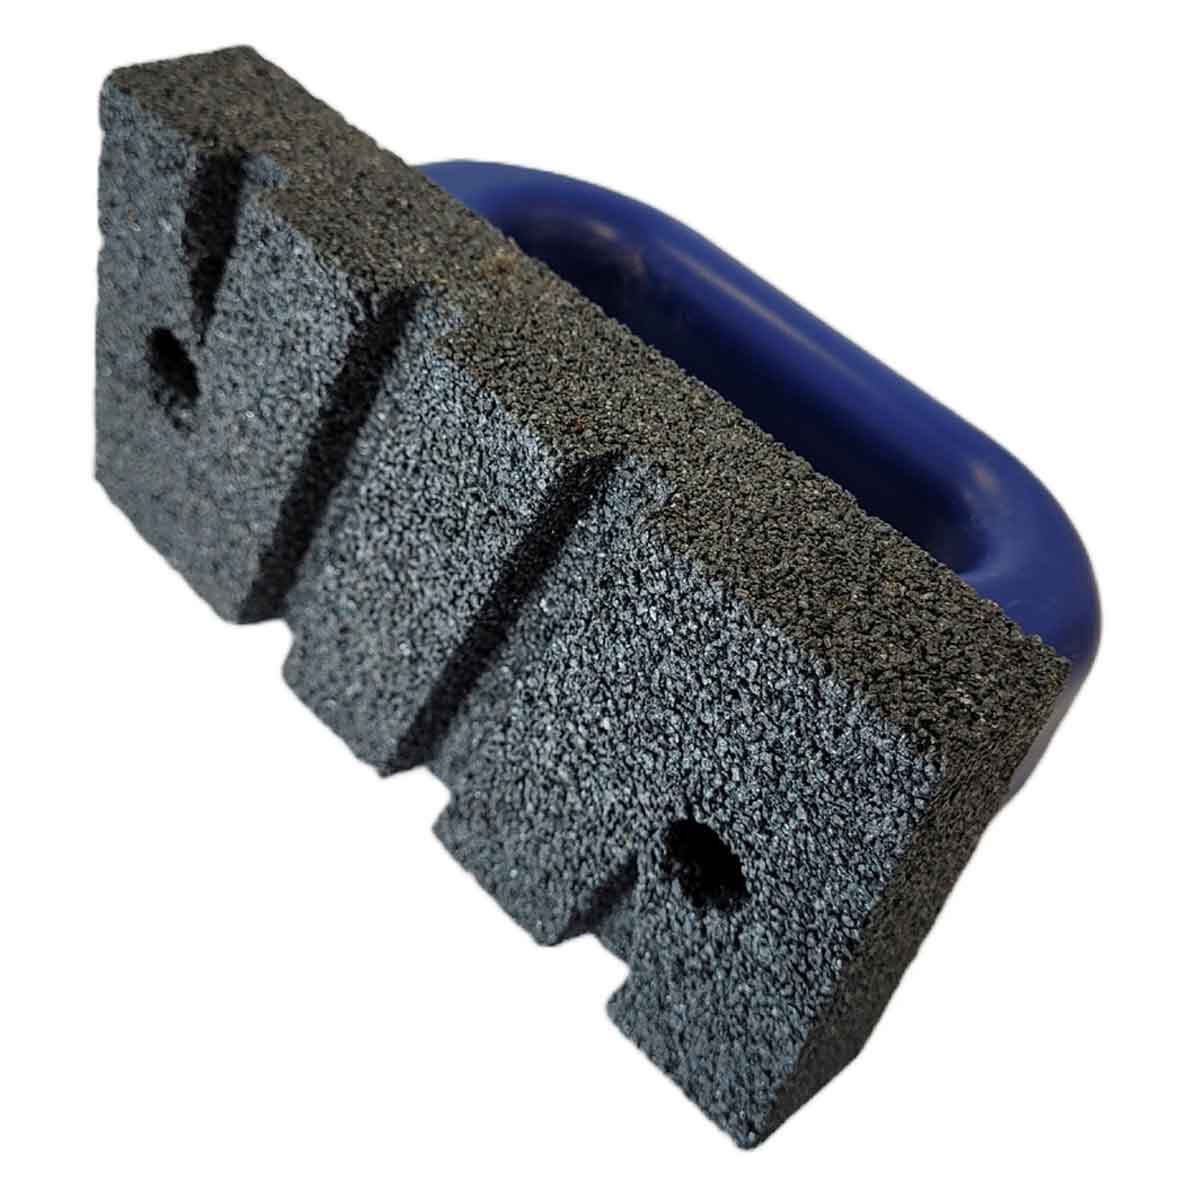 Silicon Carbide Rubbing Brick